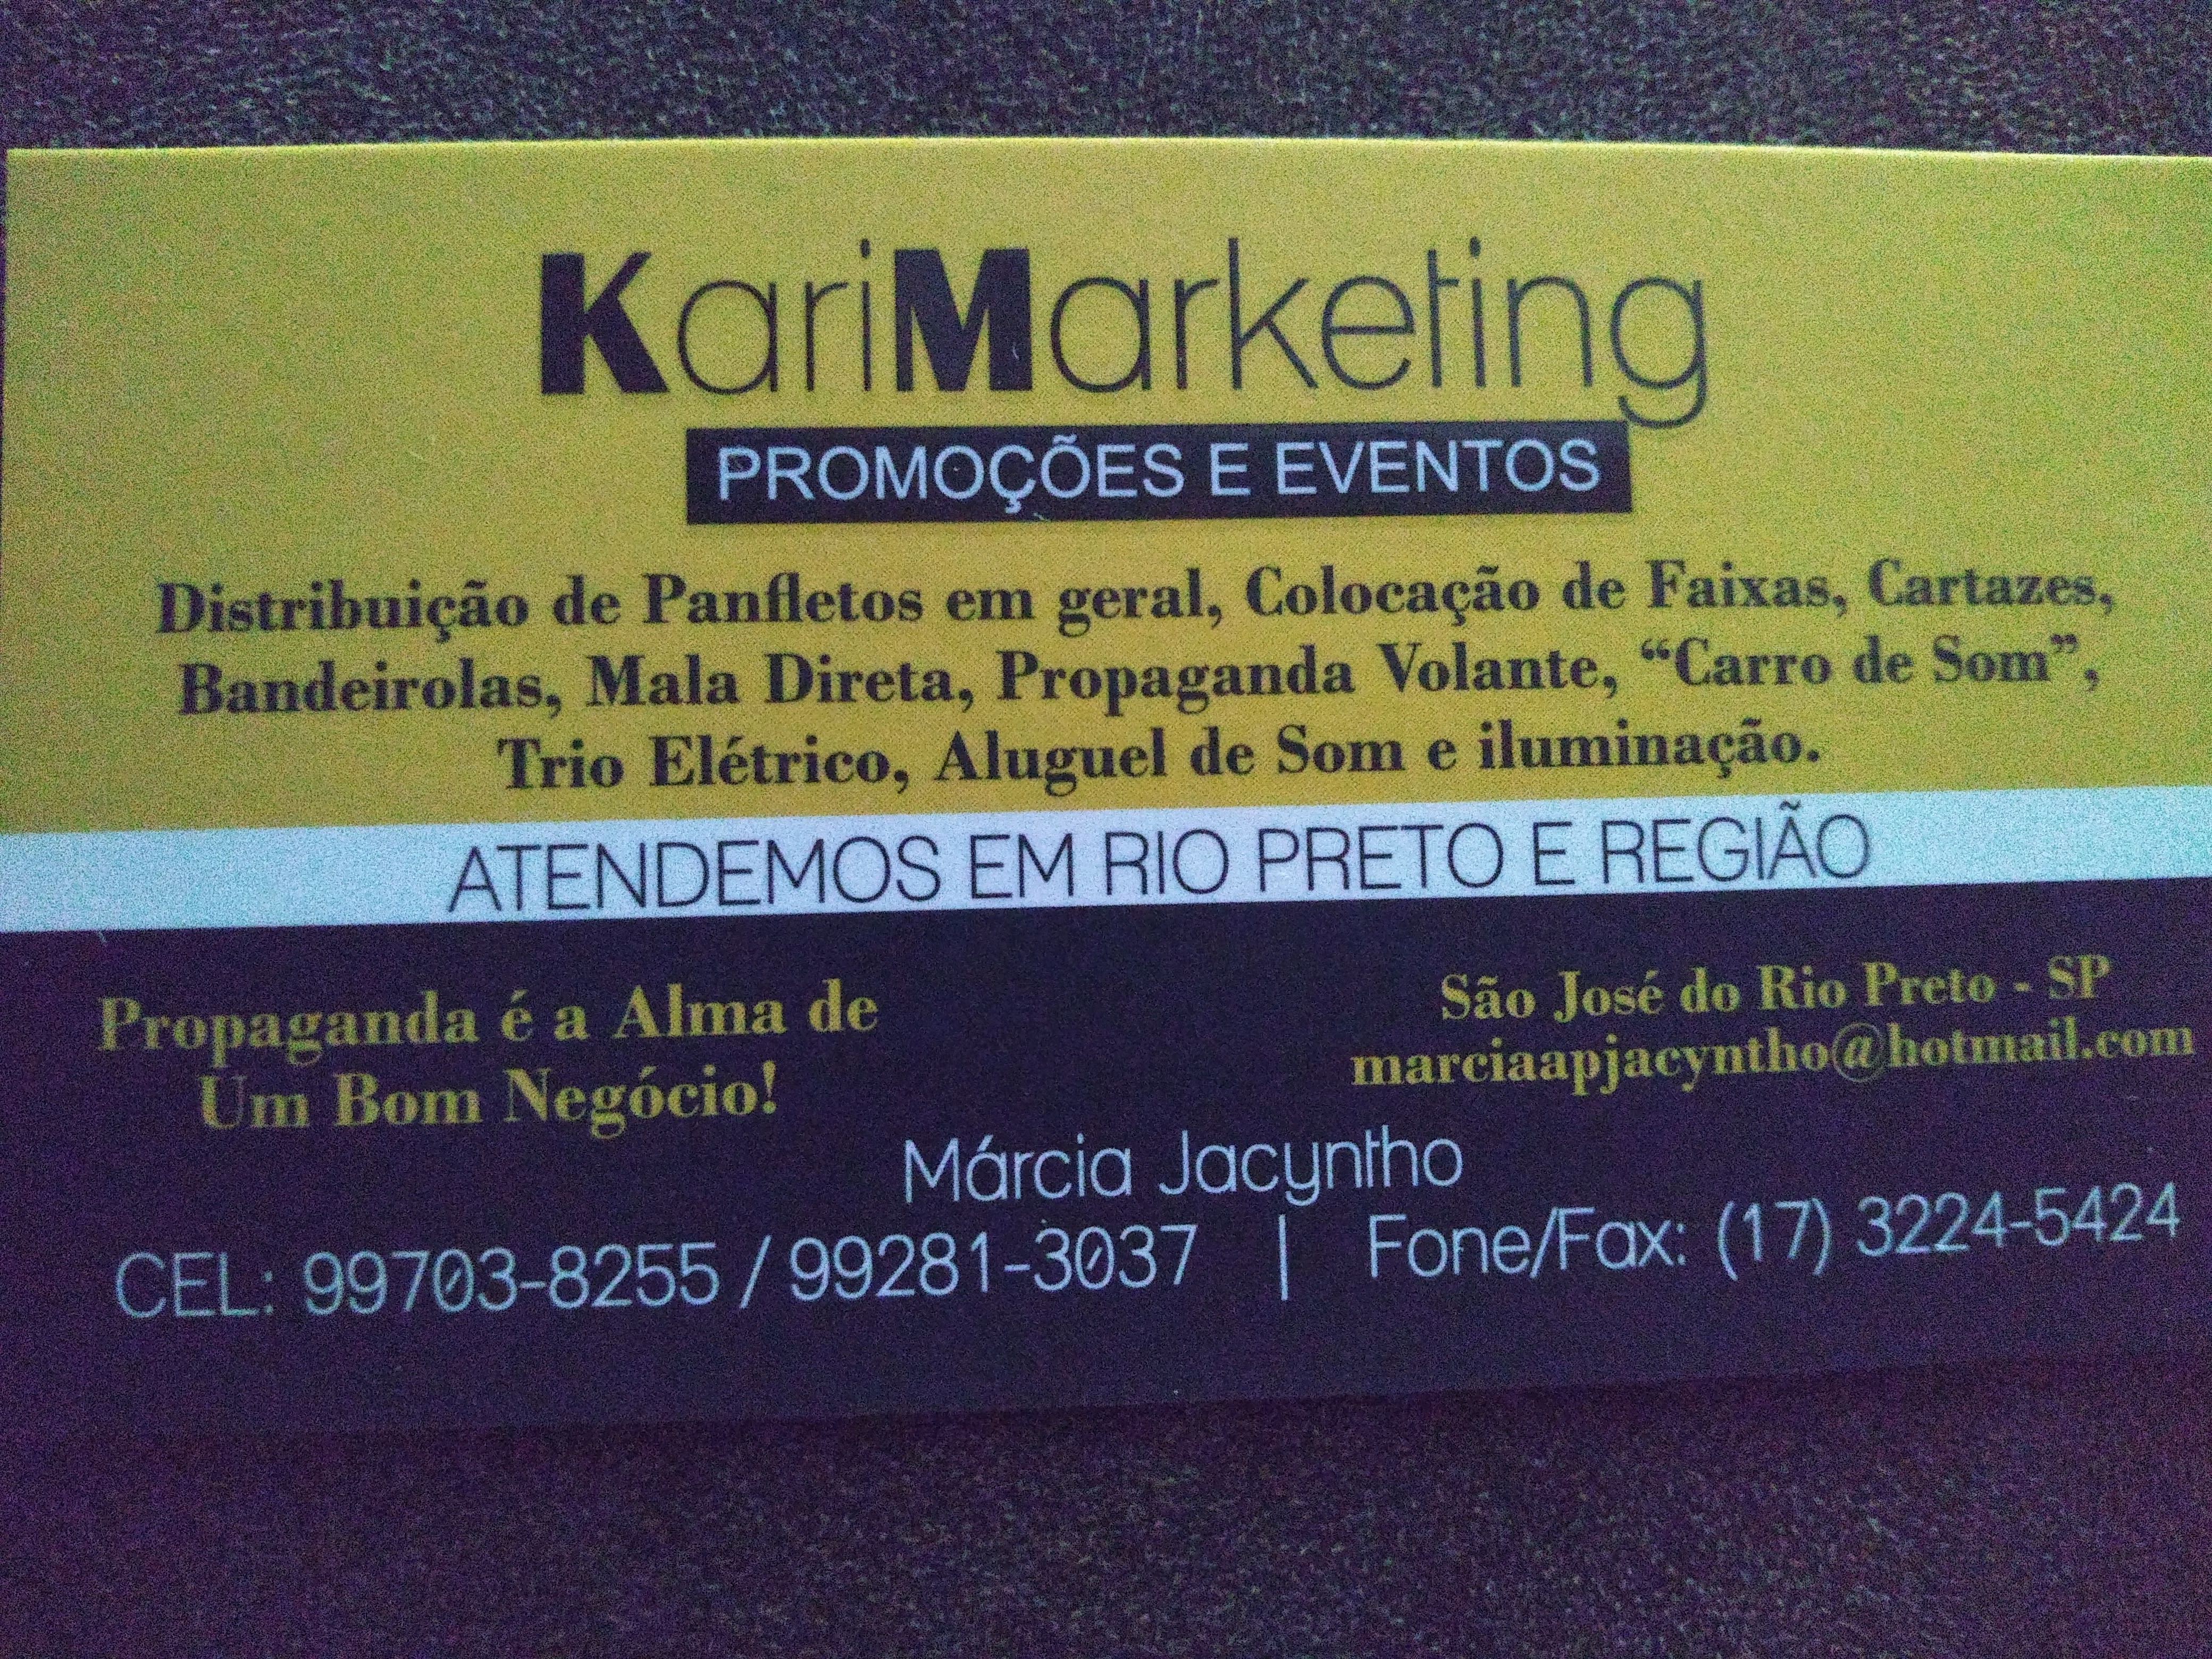 Kari Marketing Promoções e Eventos Km